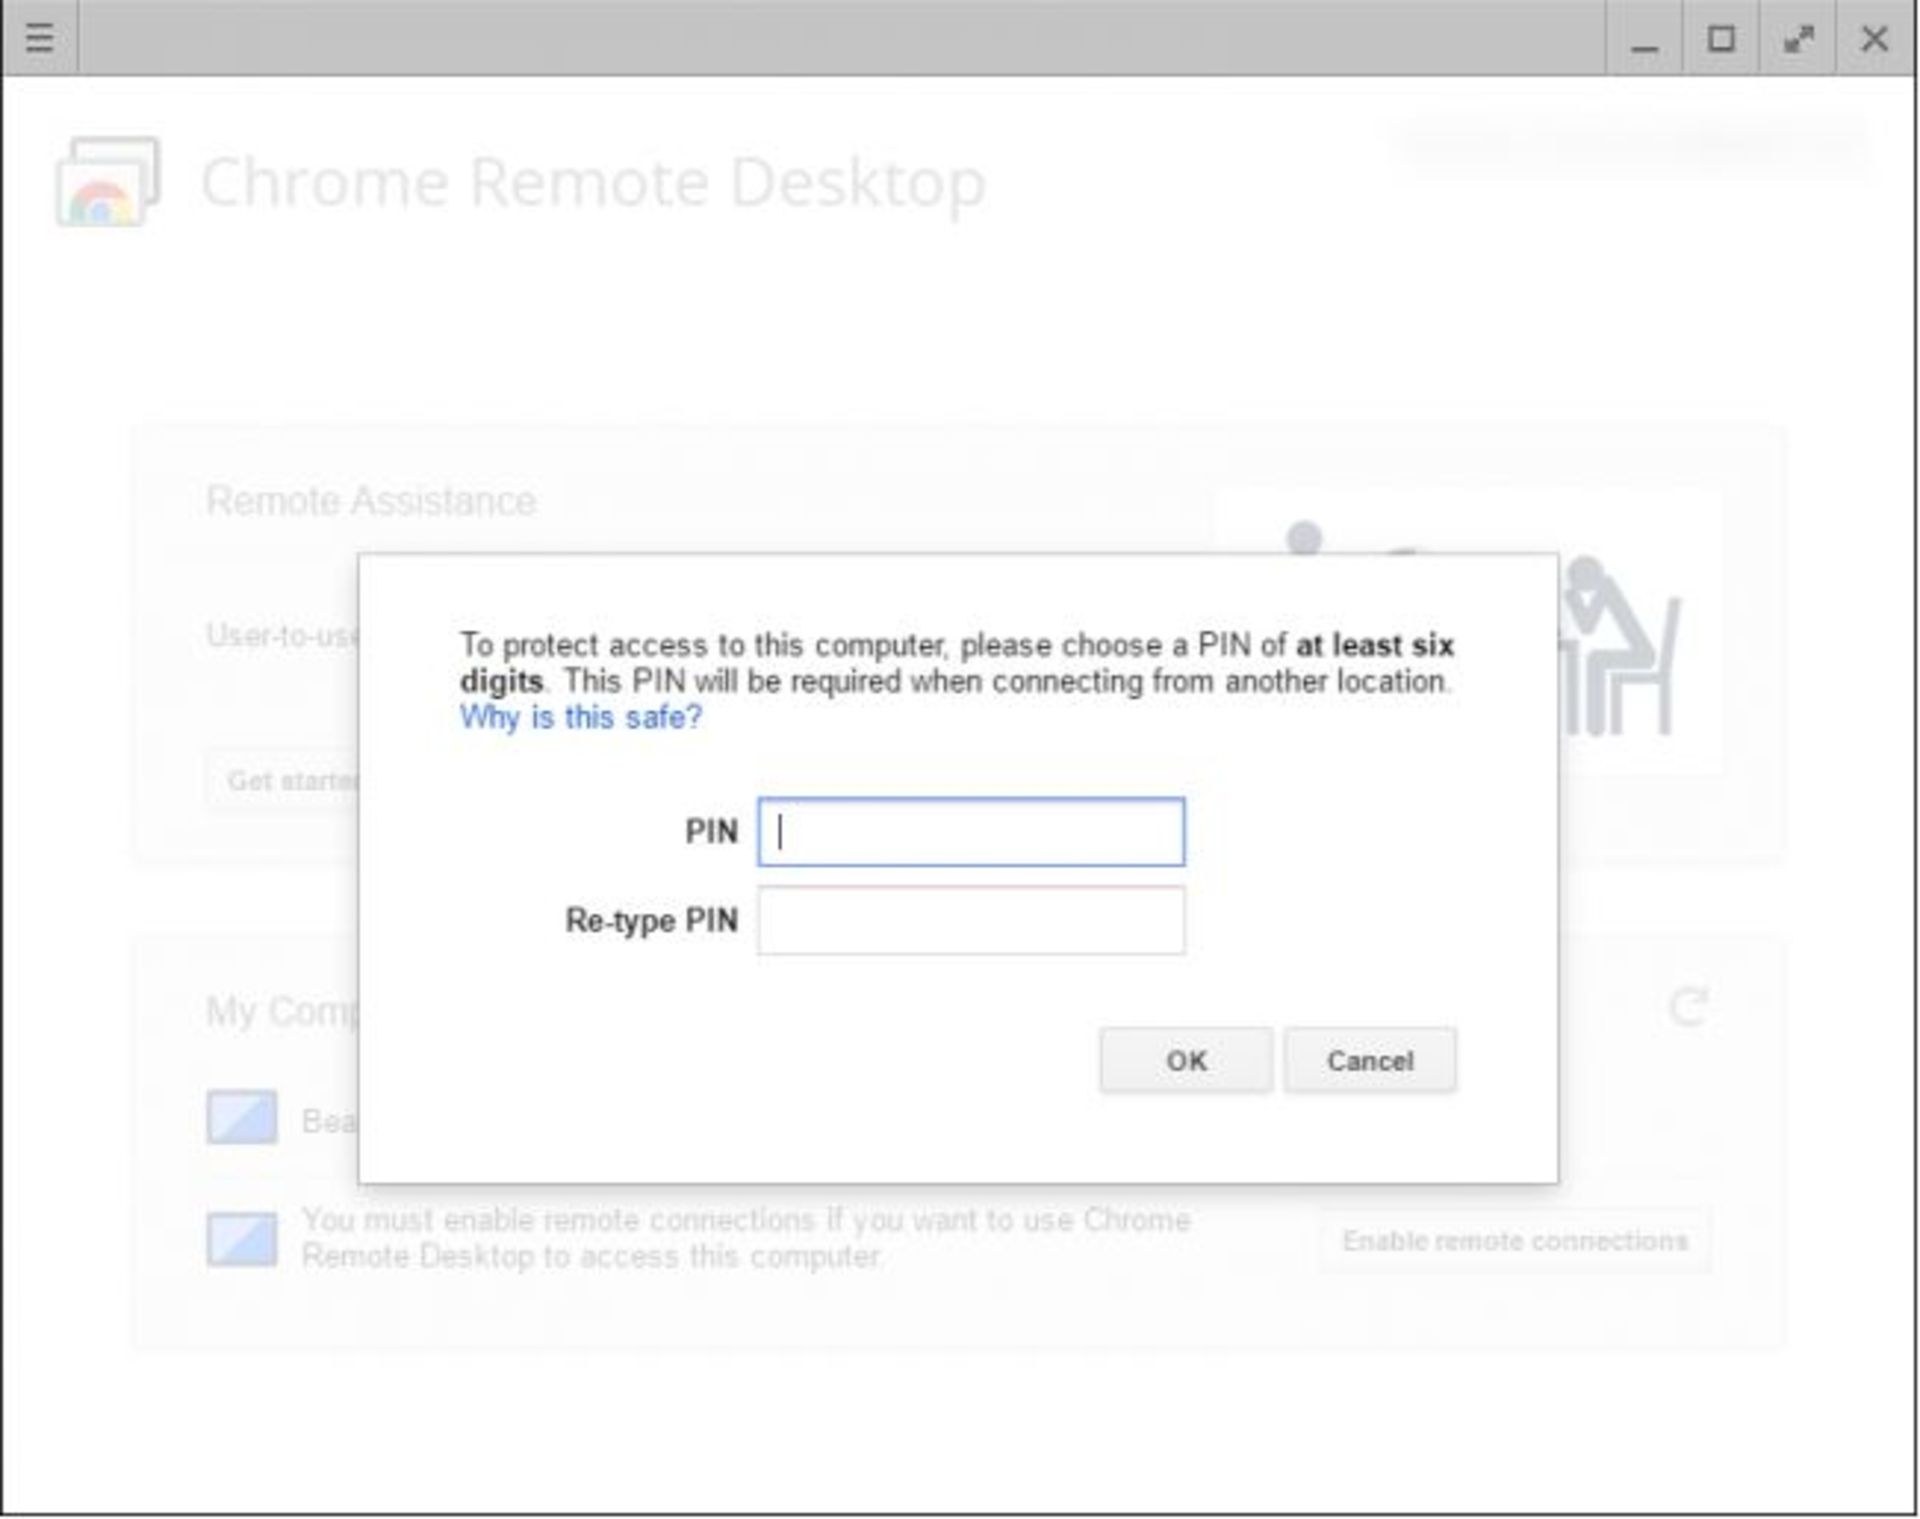 How to Set up Chrome Remote Desktop